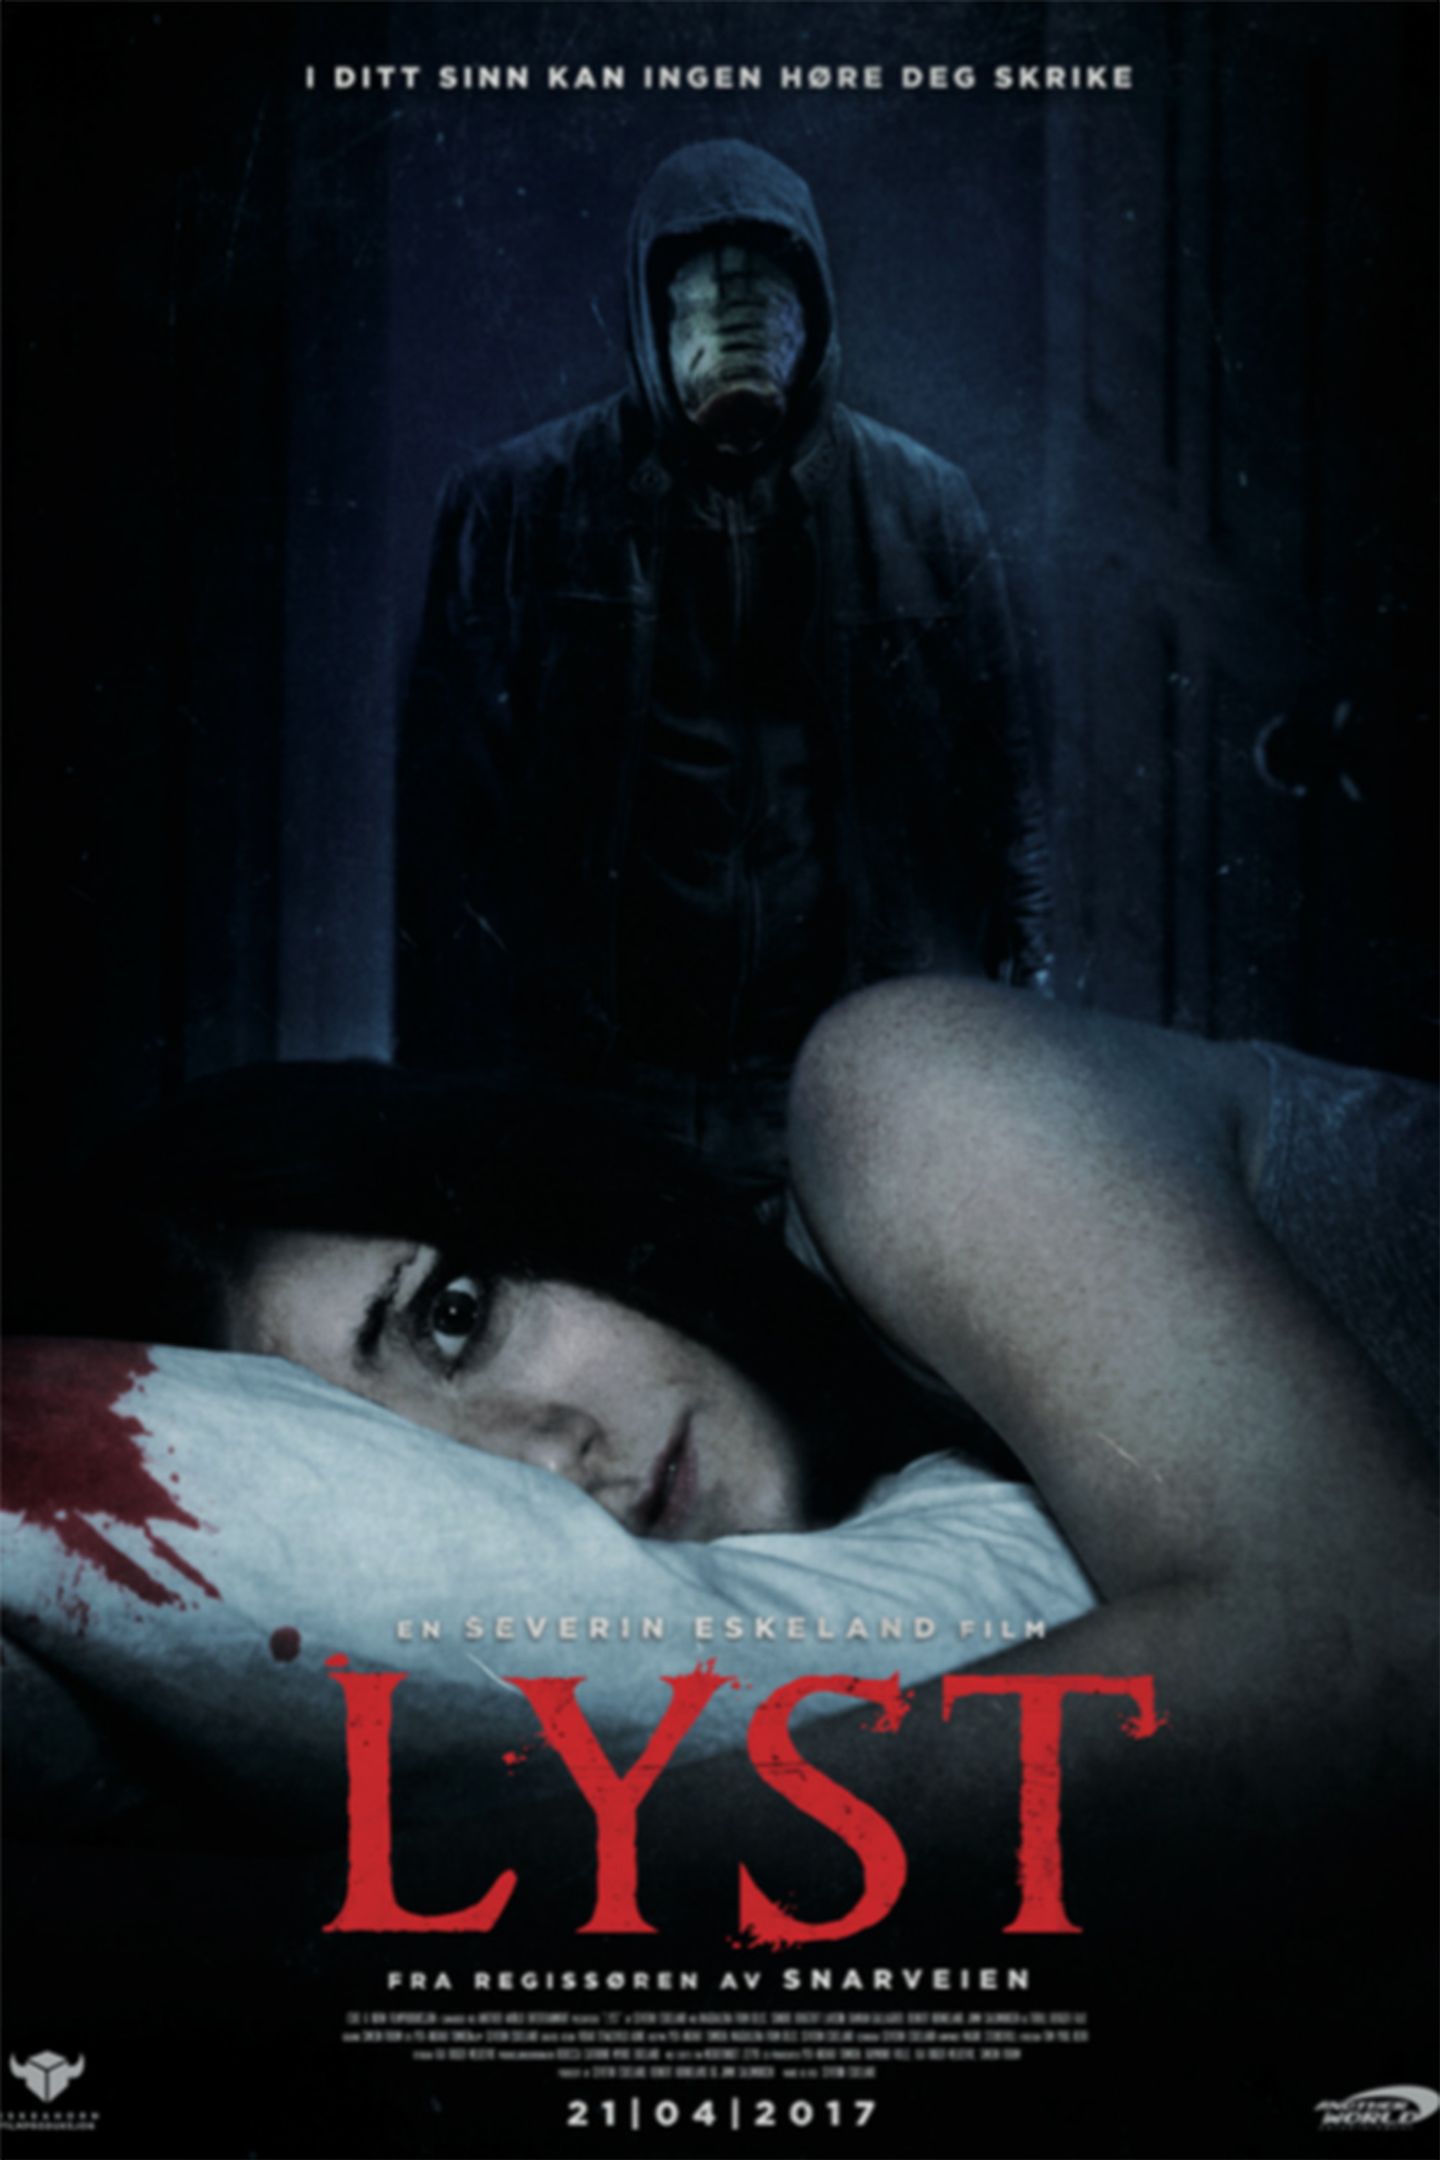 Plakat for 'LYST'